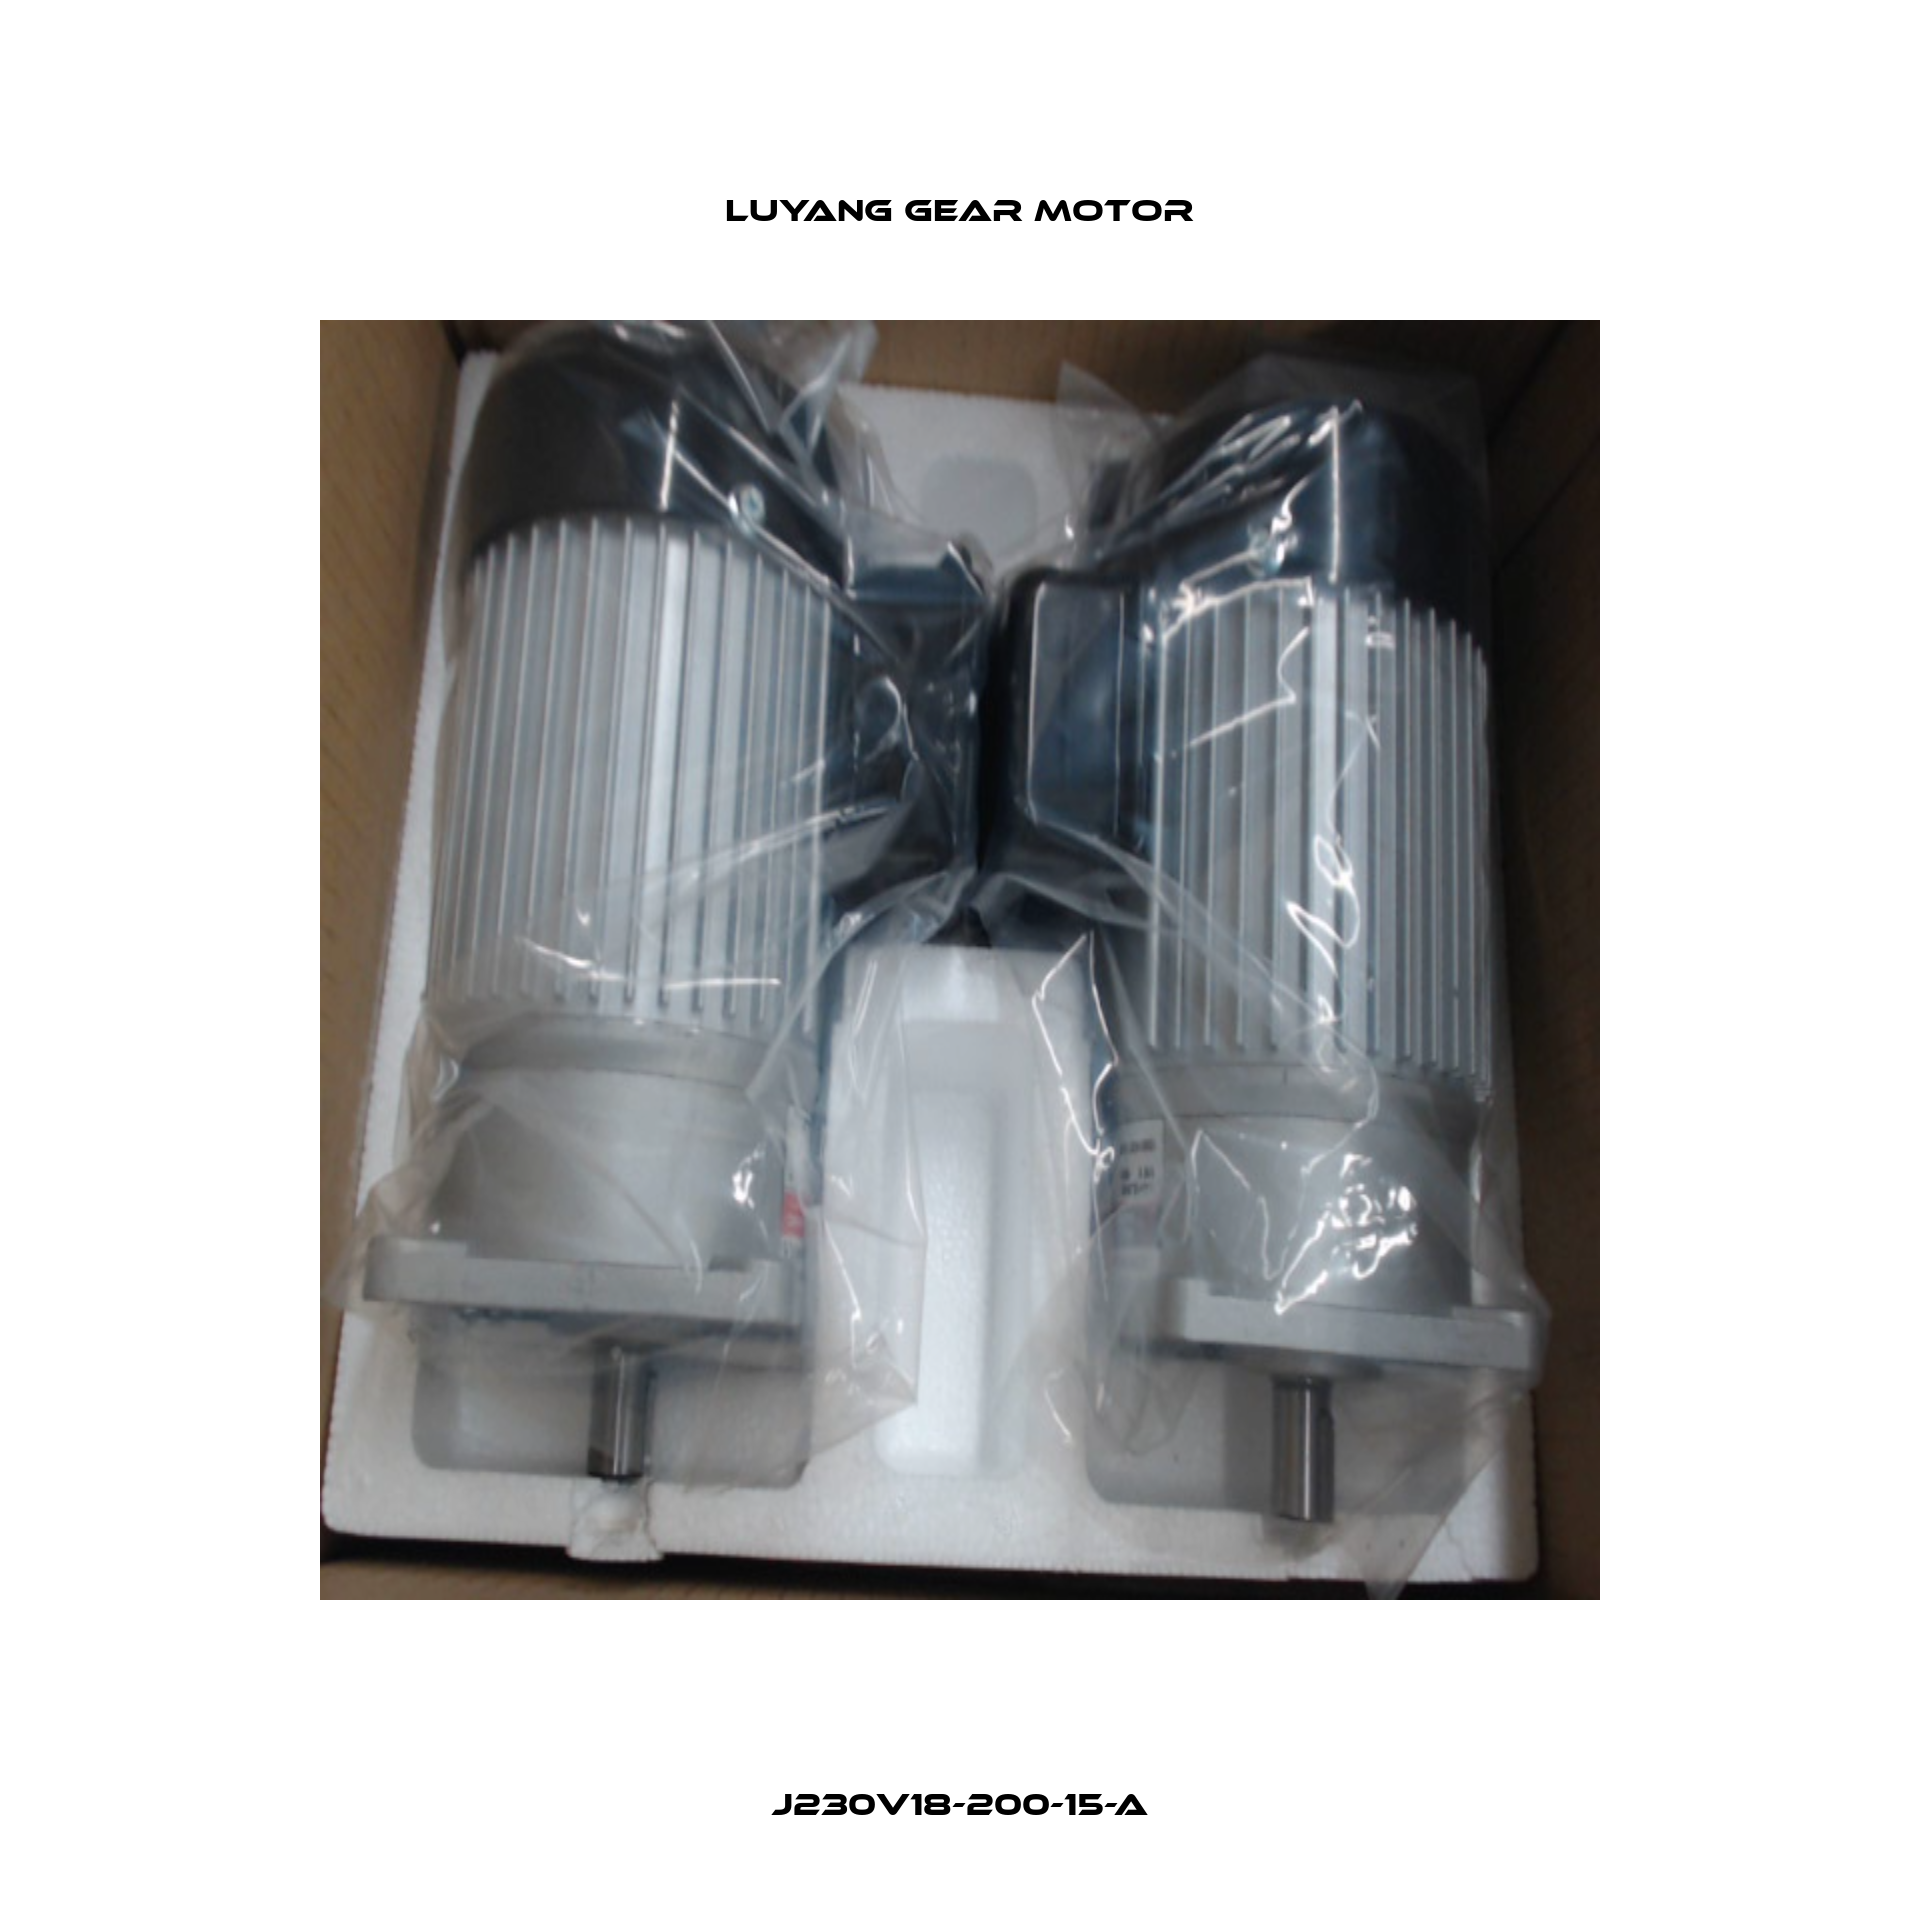 J230V18-200-15-A Luyang Gear Motor